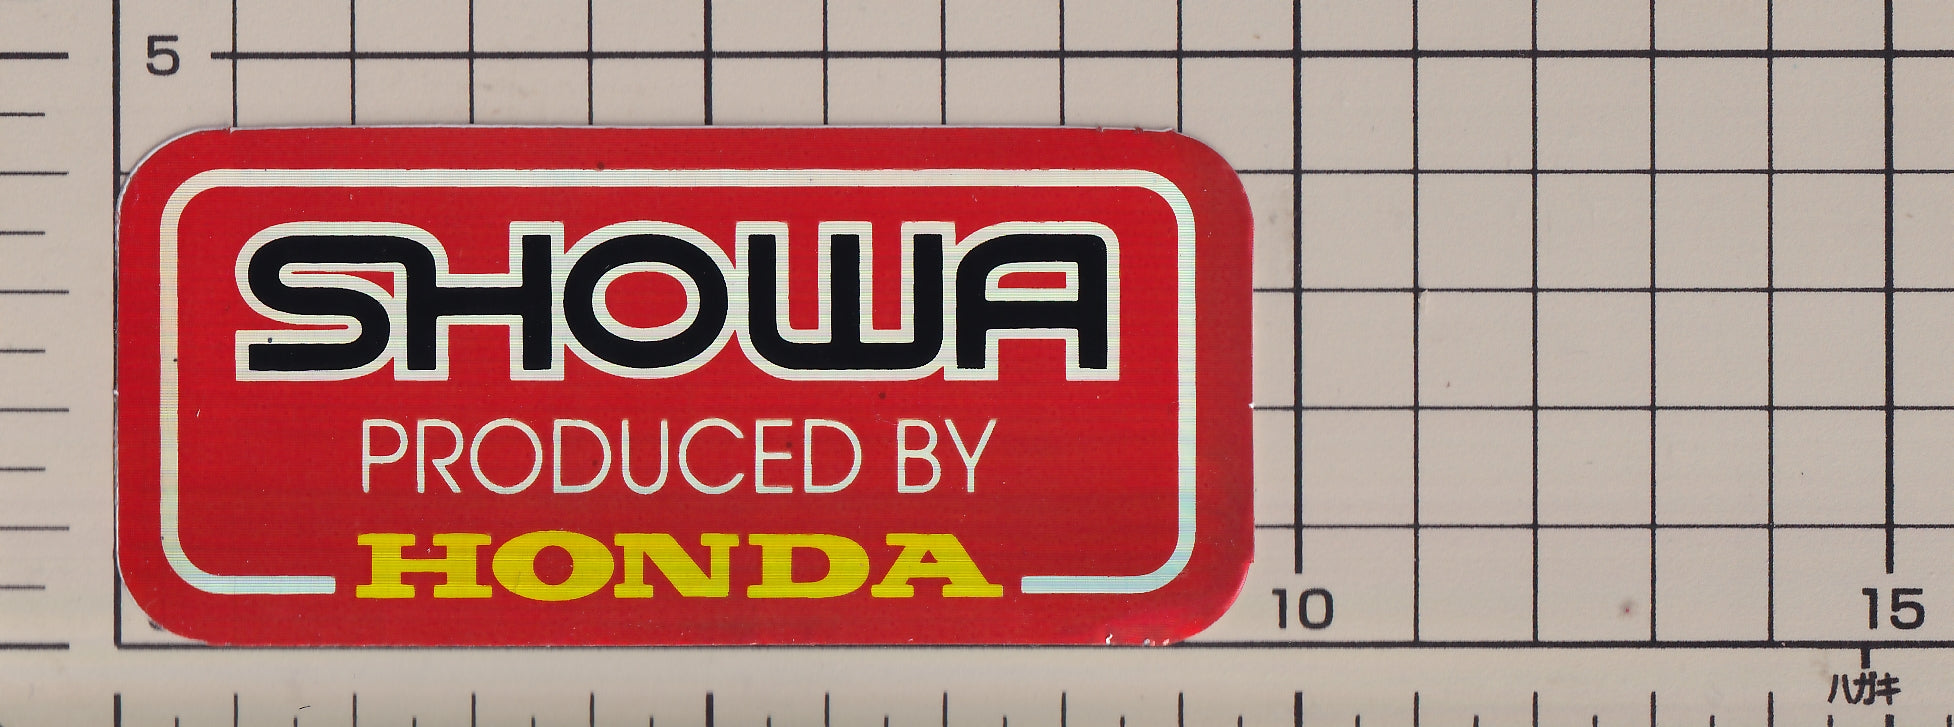 ホンダ ウィング ショウワ プロデュースバイホンダ ホログラム ステッカー【残りわずか】HONDA sticker hologram win